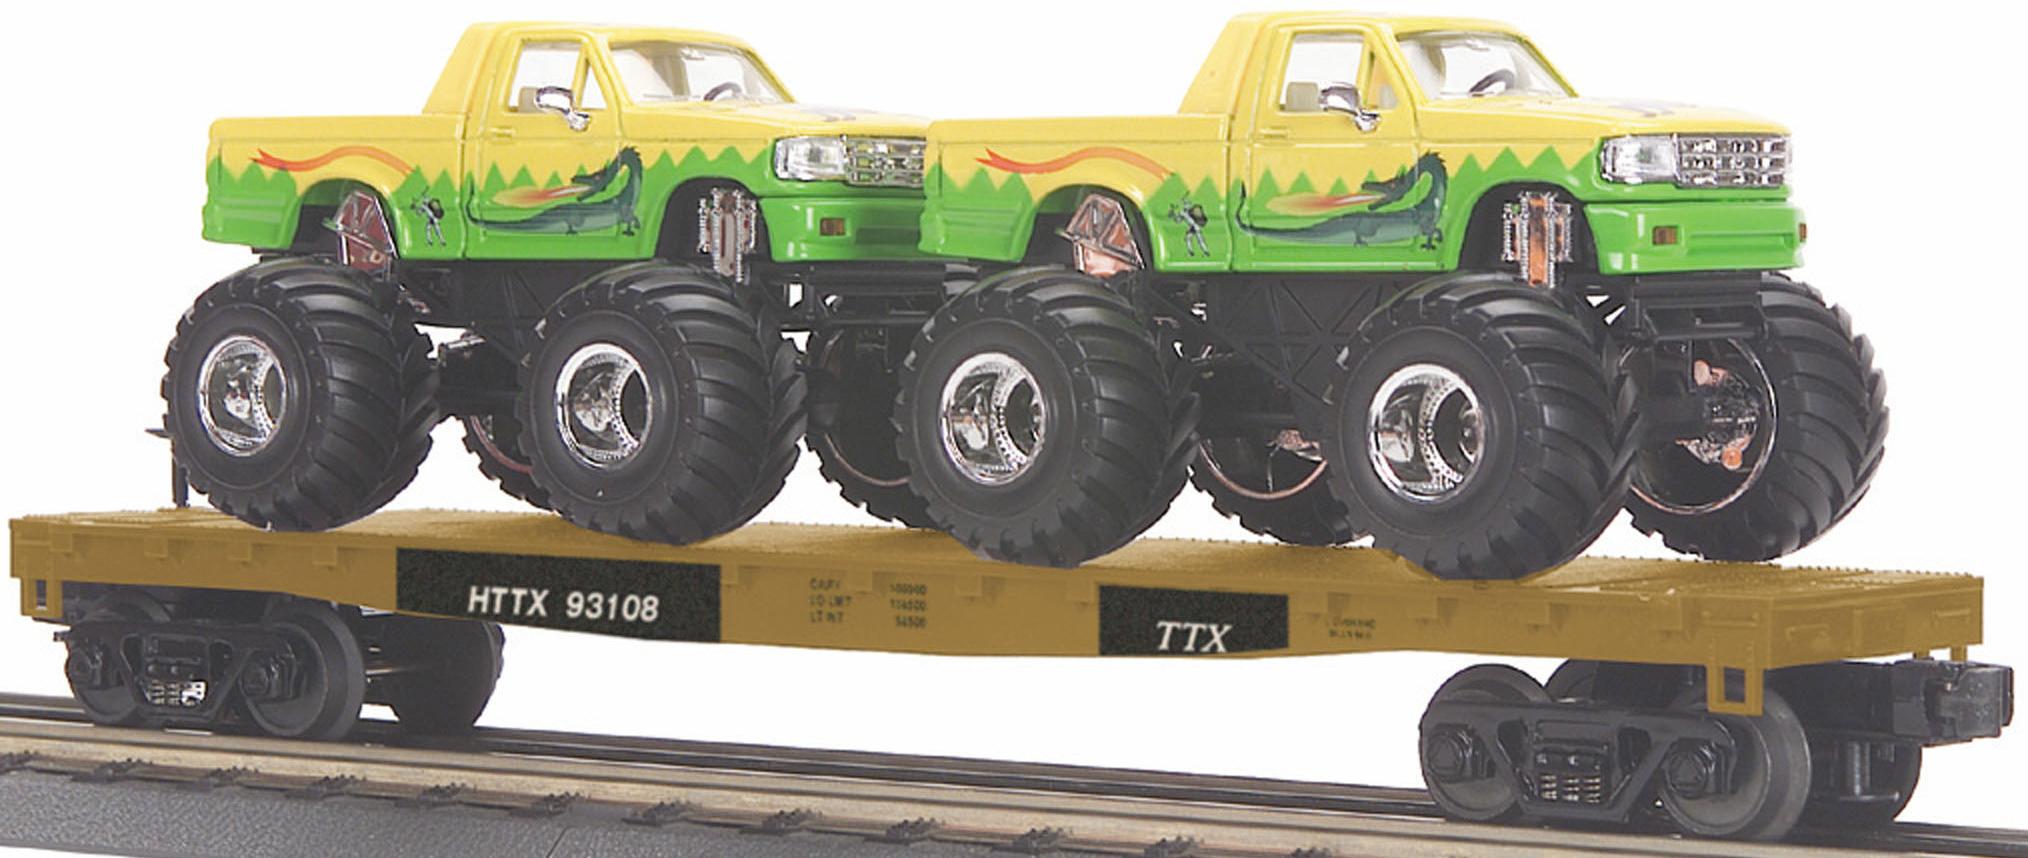 HTTX Flat Car w/(2) Monster Trucks image